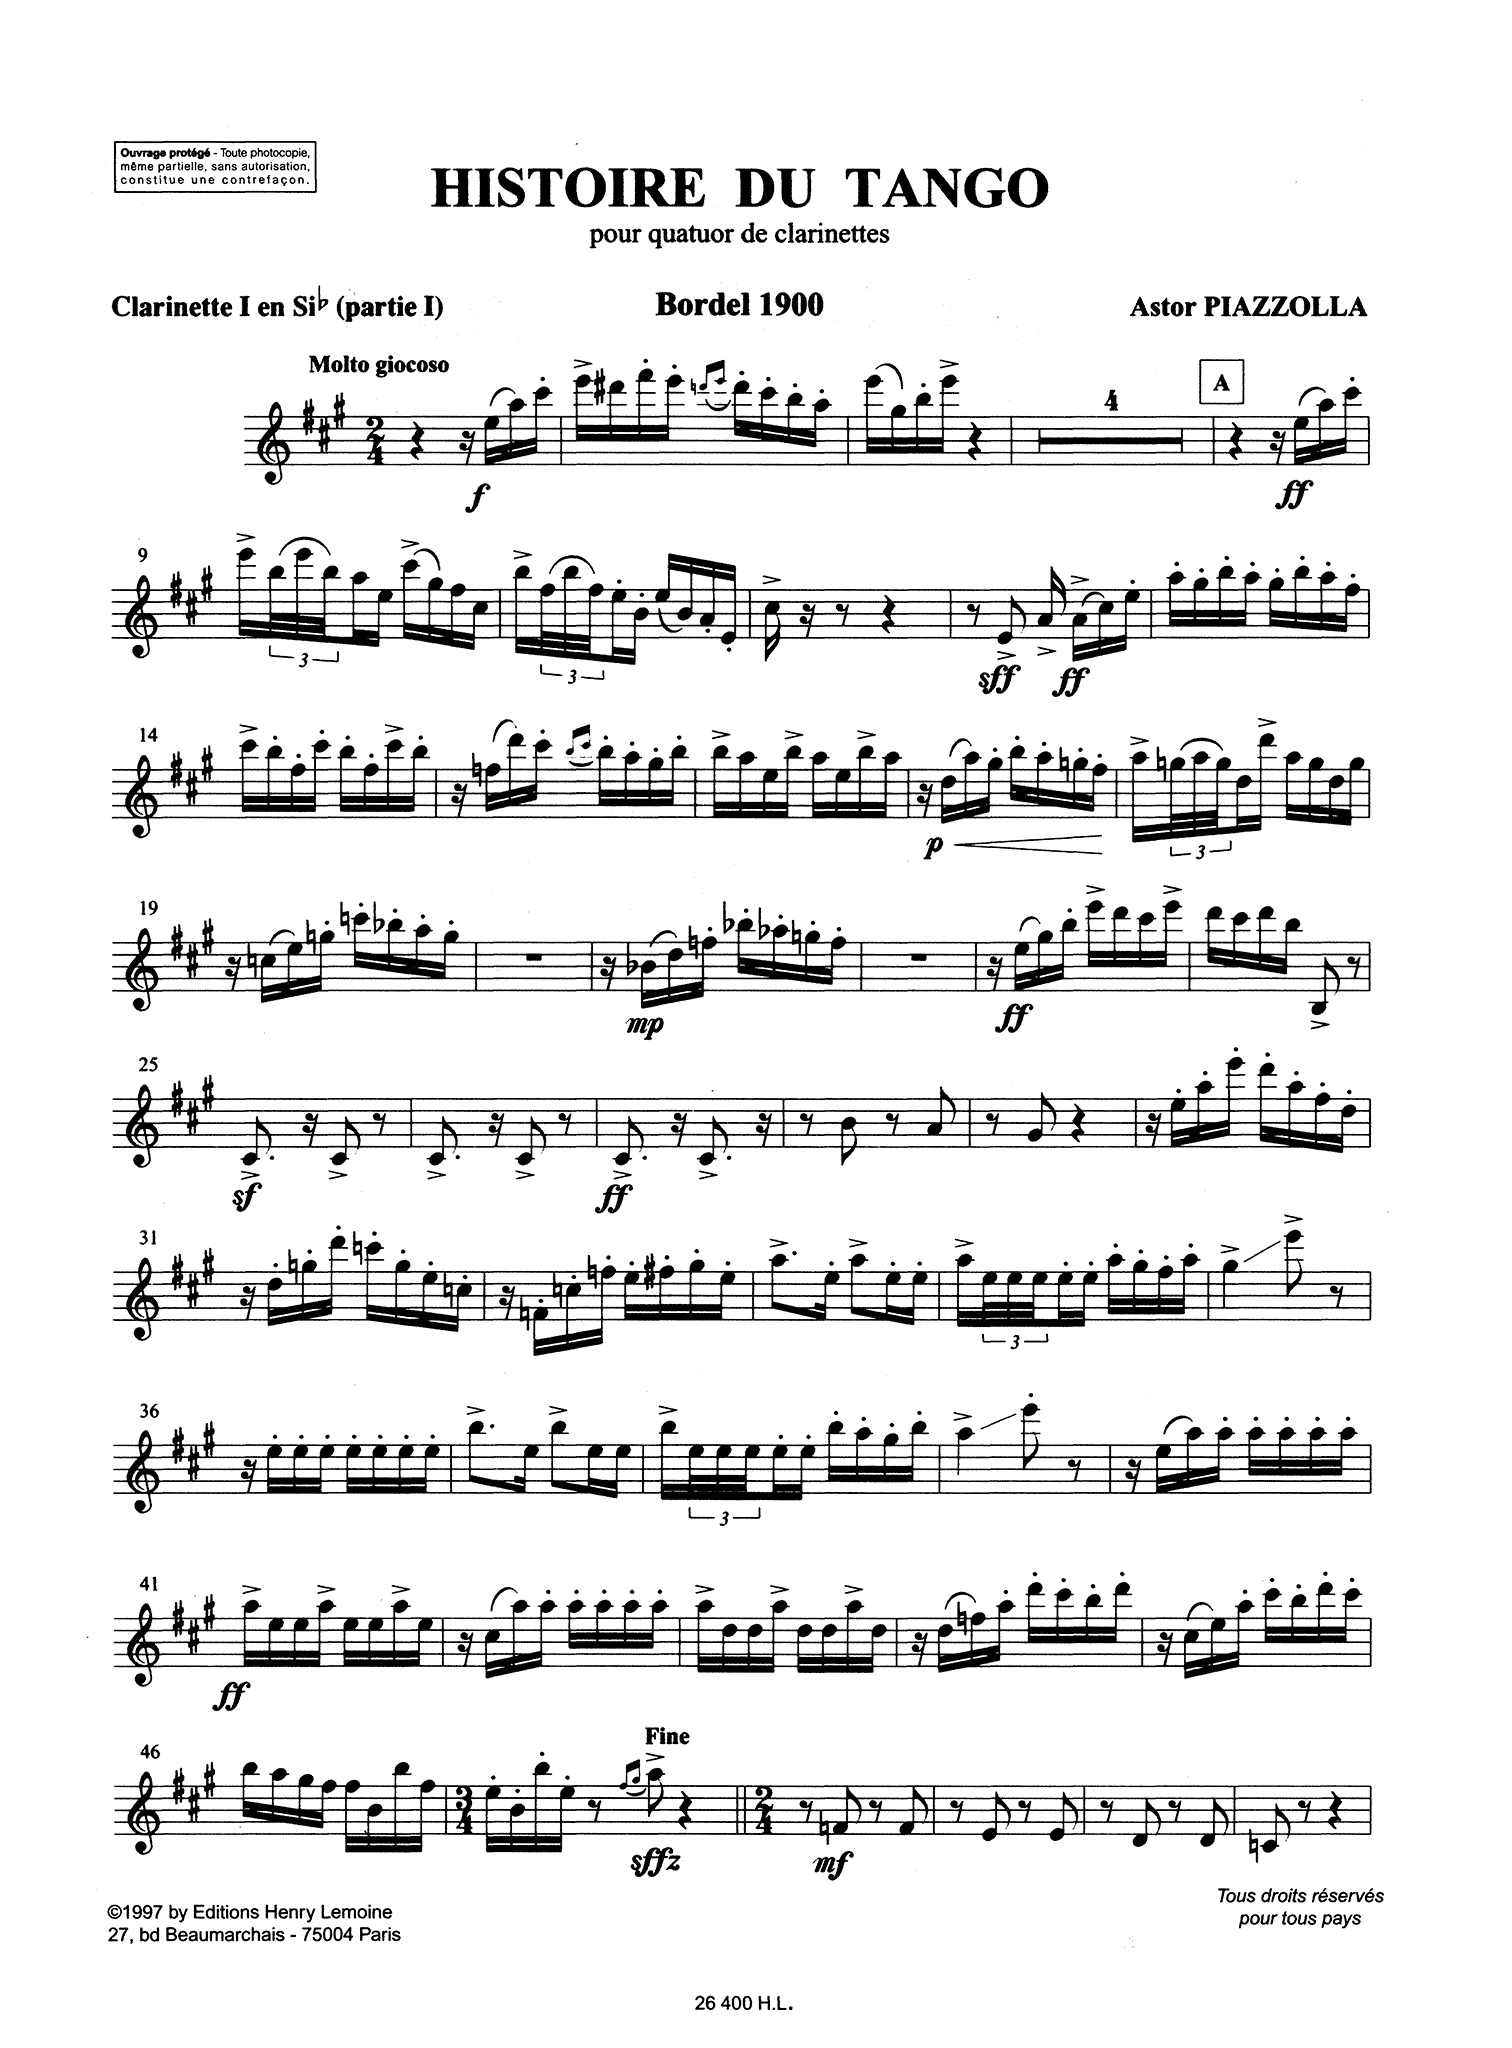 Piazzolla Histoire du Tango clarinet quartet arrangement Clarinet 1 part